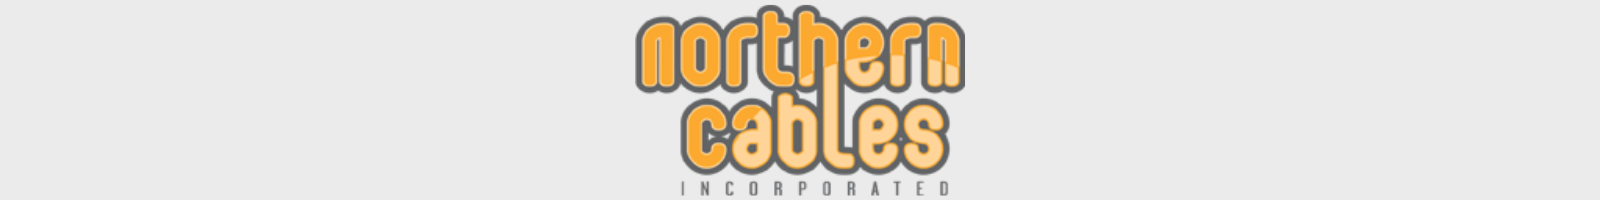 northen cables logo